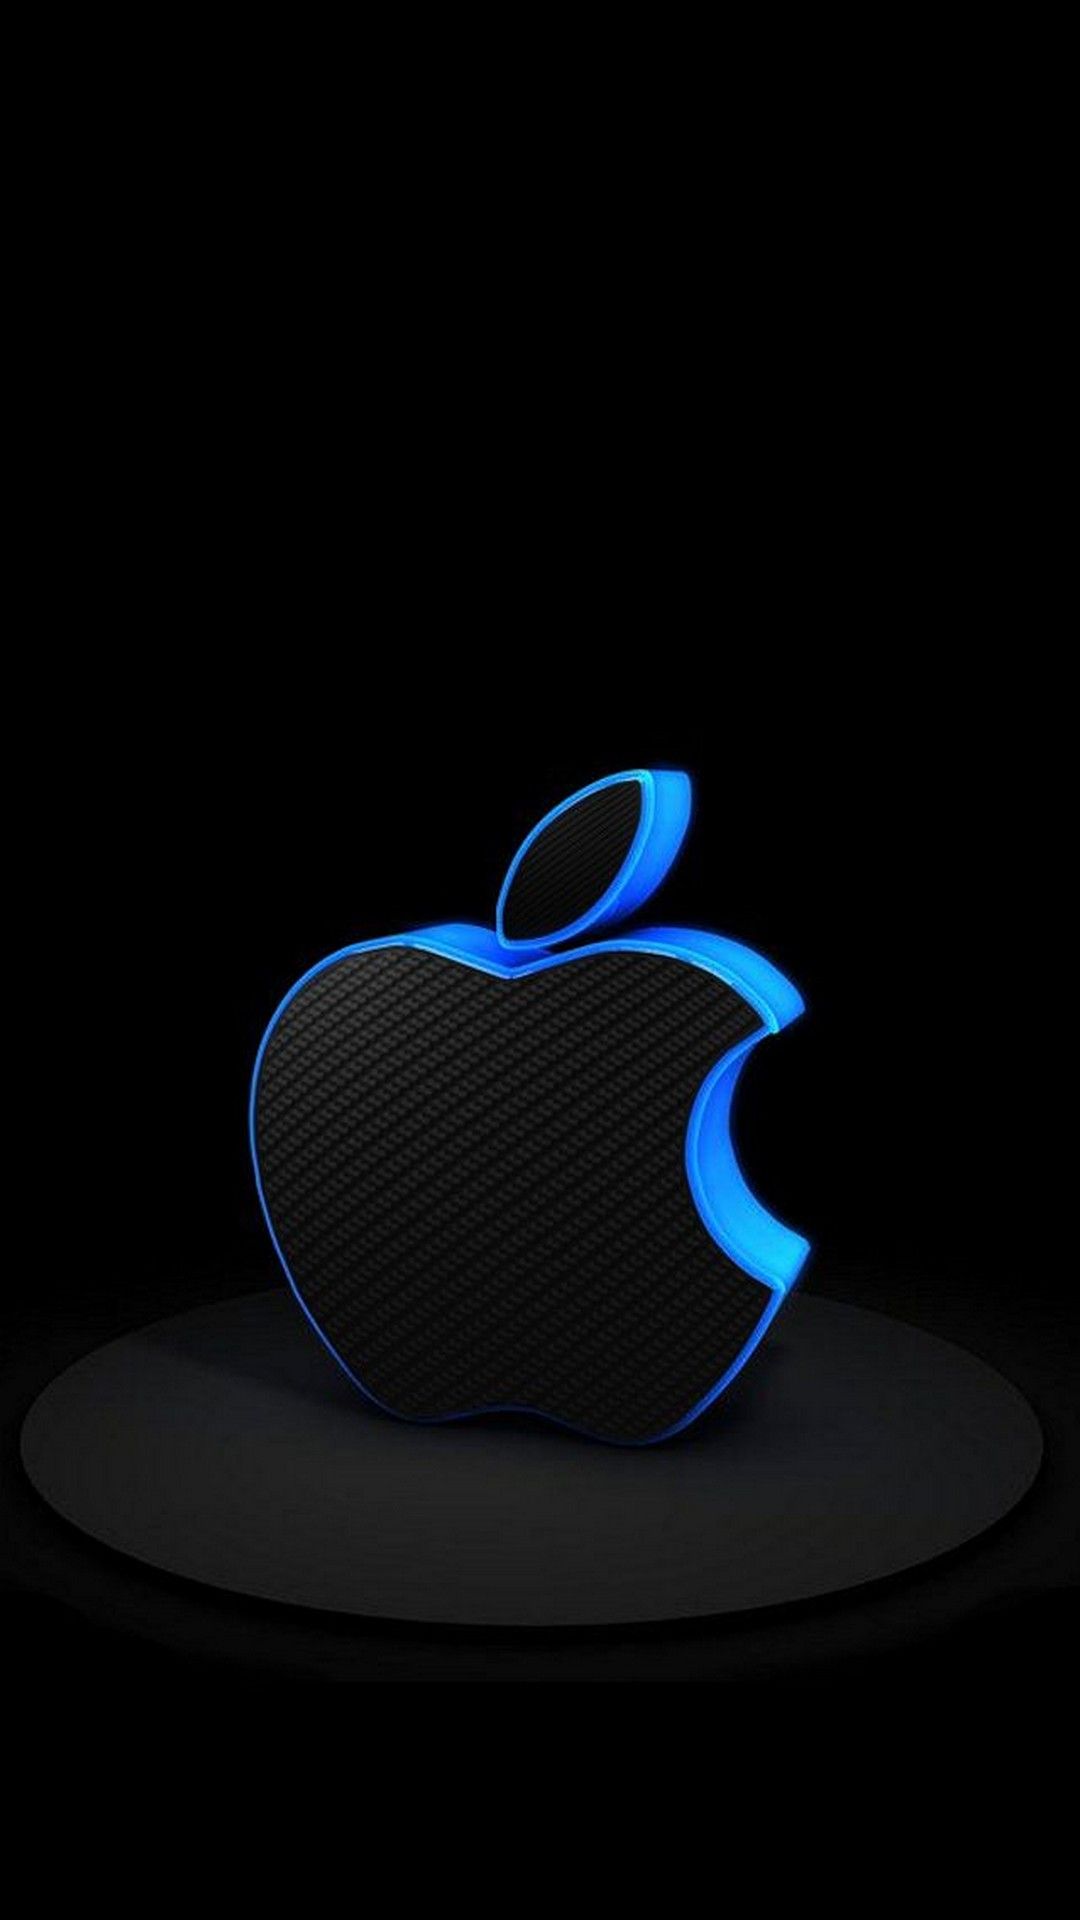 3d iPhone Logo Wallpaper Blue iPhonewallpaper Apple